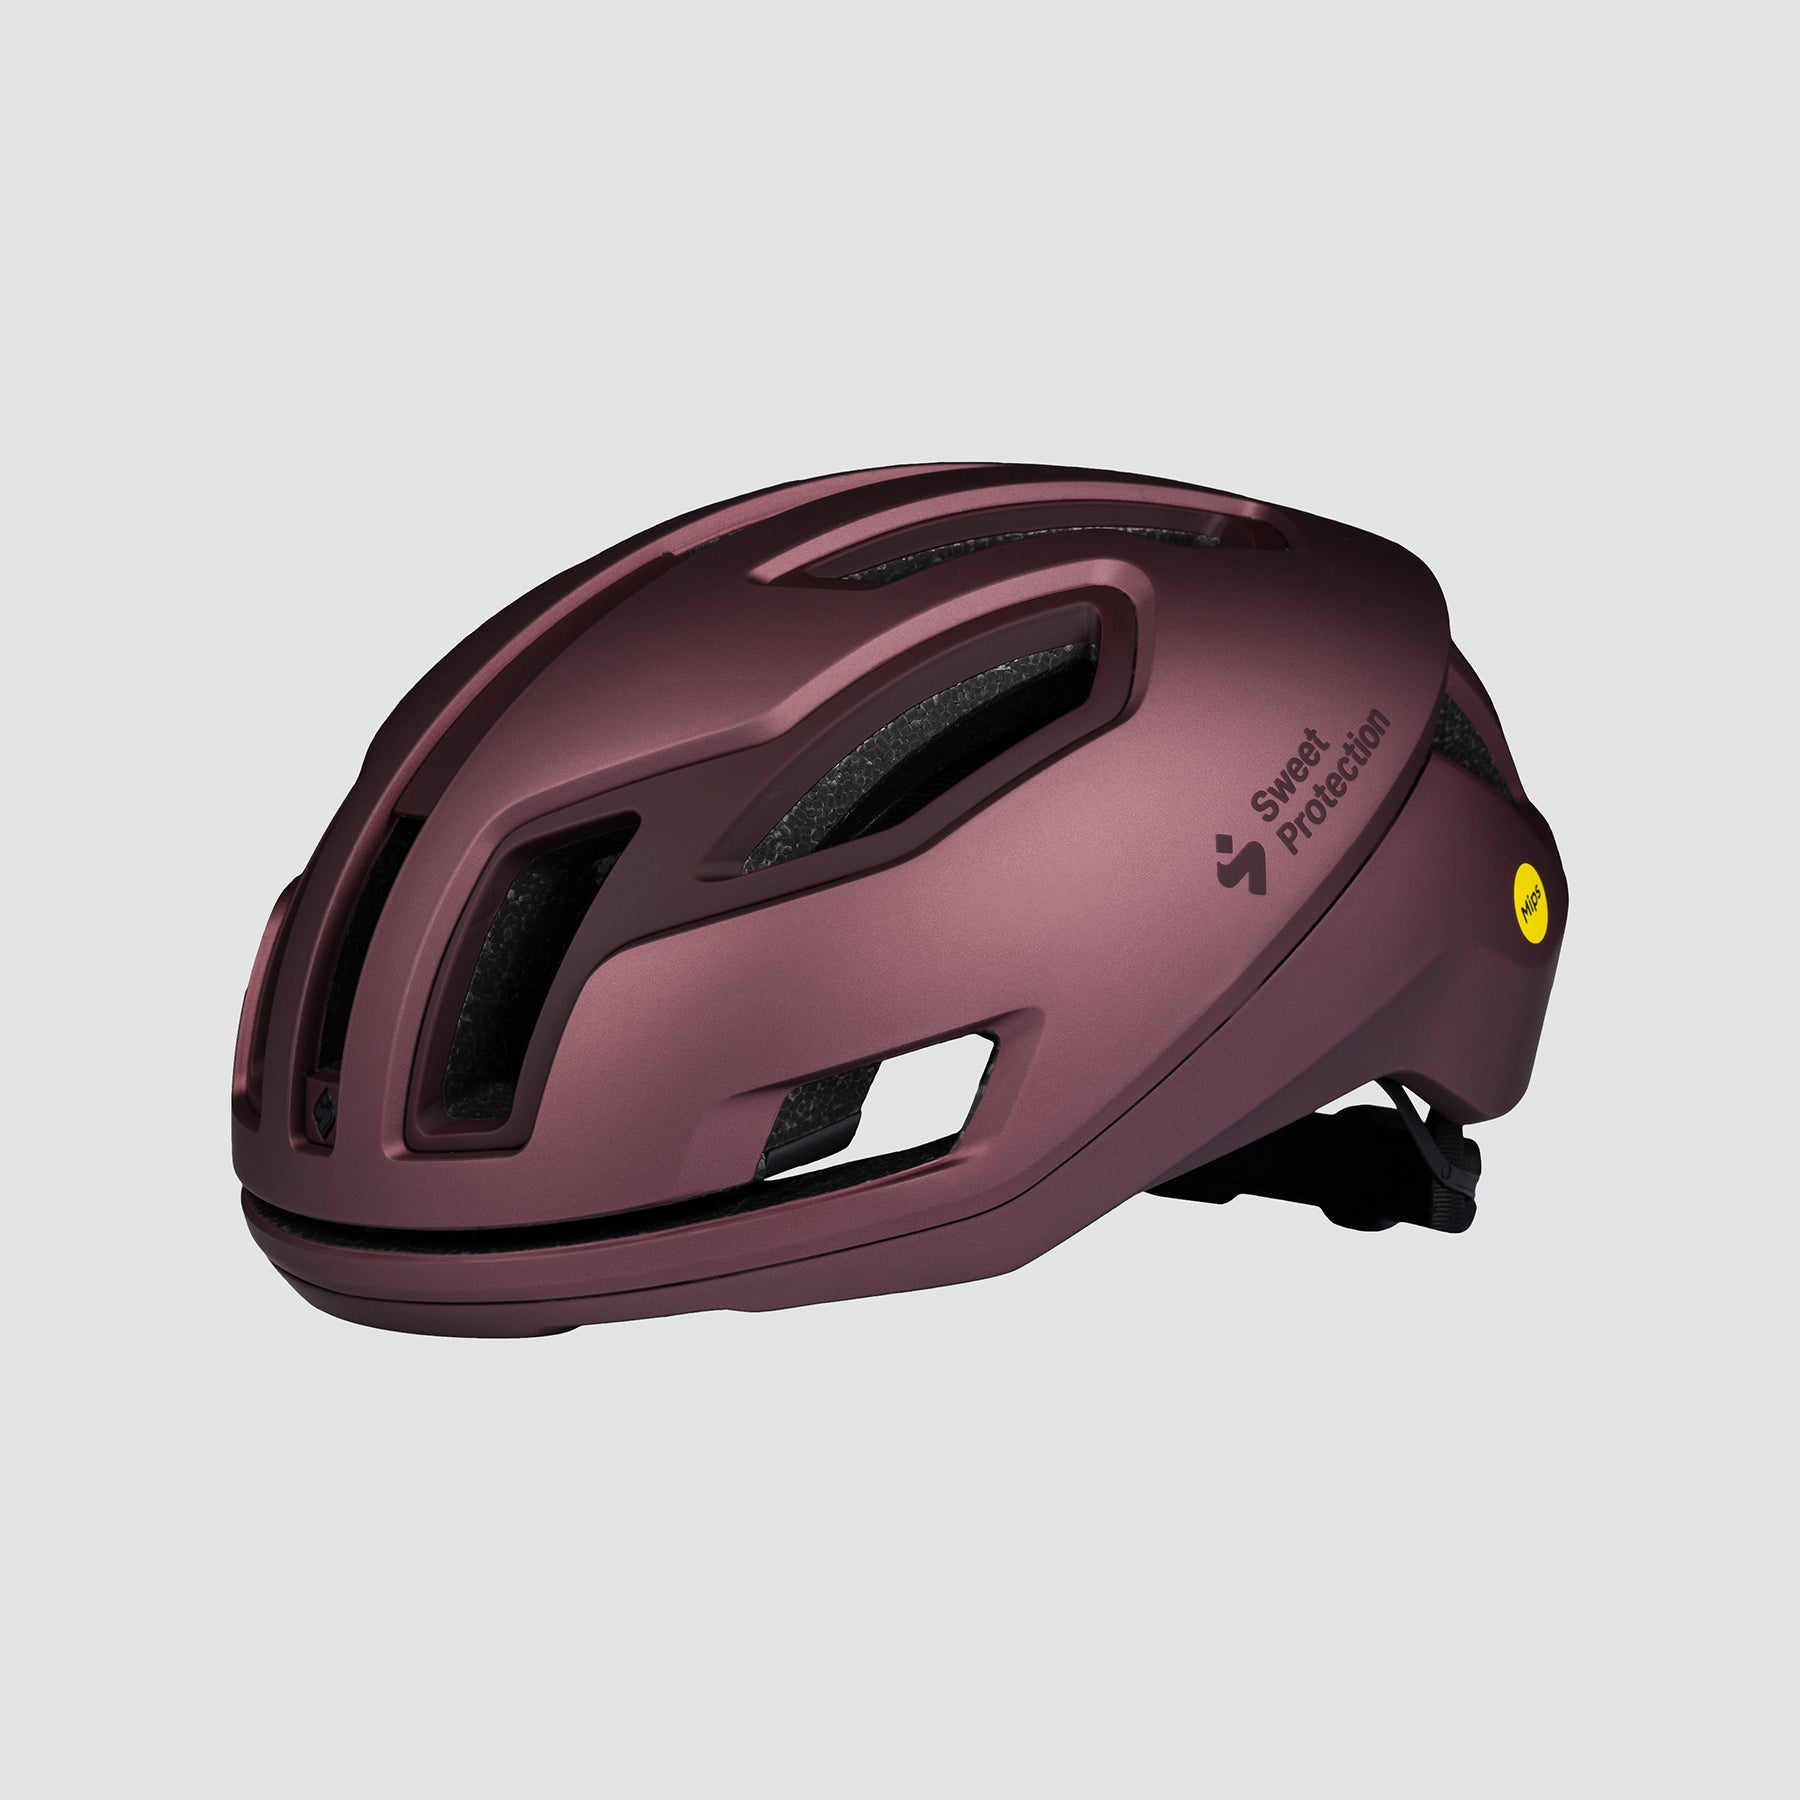 Falconer 2Vi Mips Helmet - Barbera Metallic